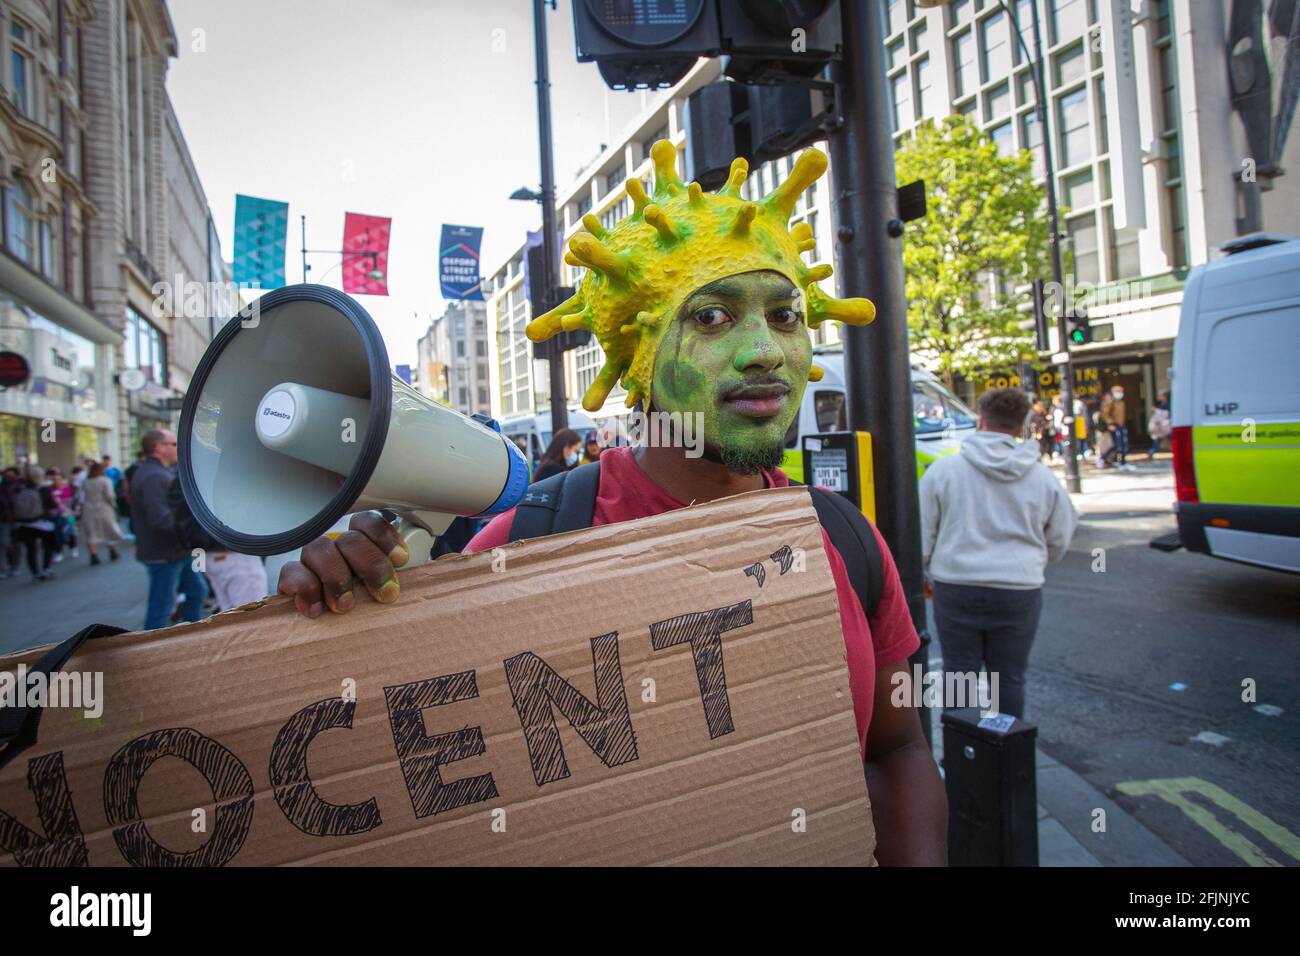 24 avril 2021, Londres, Angleterre, Royaume-Uni : un homme portant un costume de virus corona lorsqu'il participe à une manifestation anti-verrouillage « Unite for Freedom » Banque D'Images